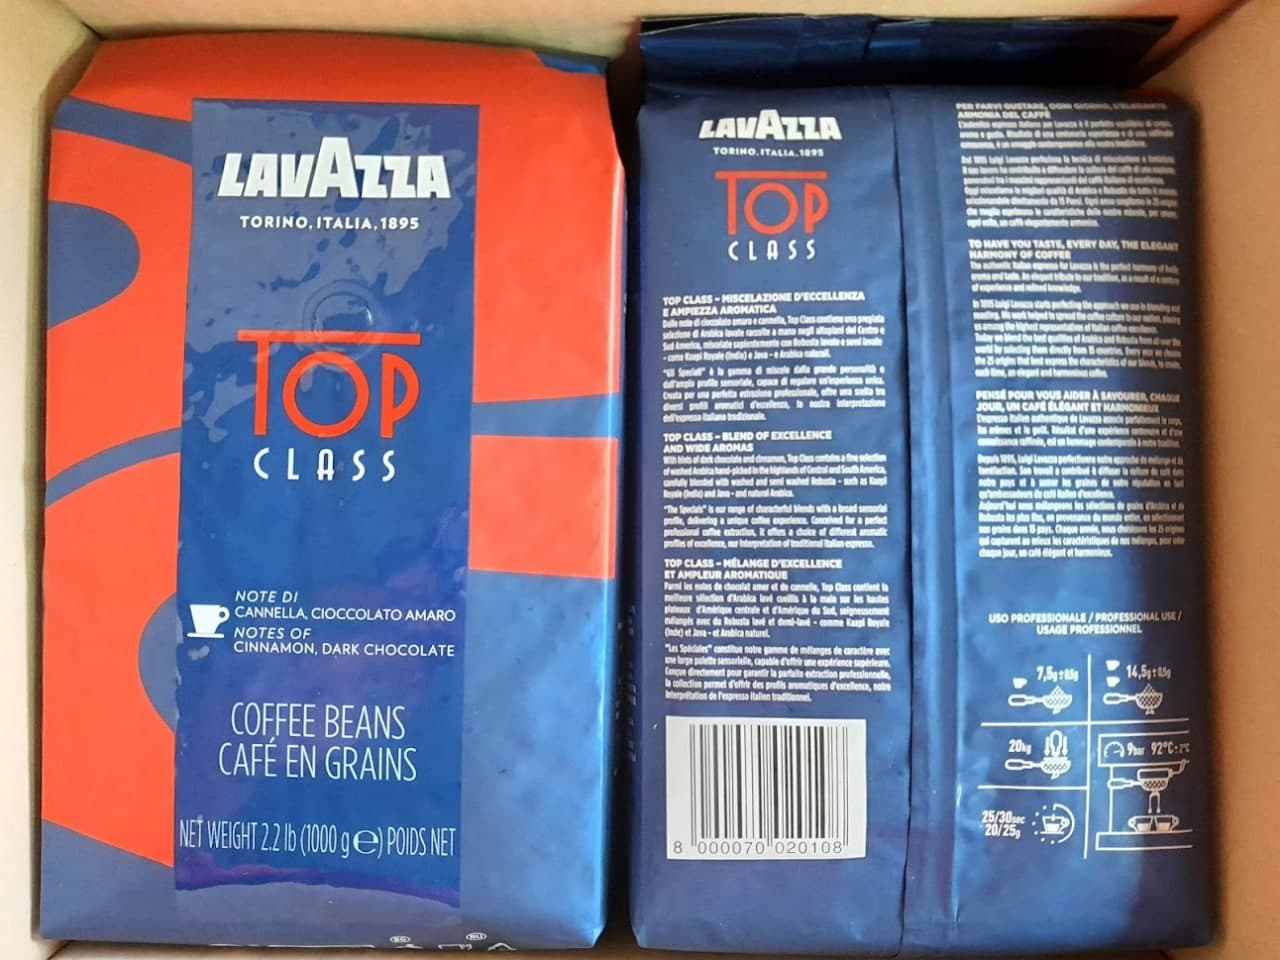 Pupiņu kafija "LAVAZZA" Specials Collection Top Class